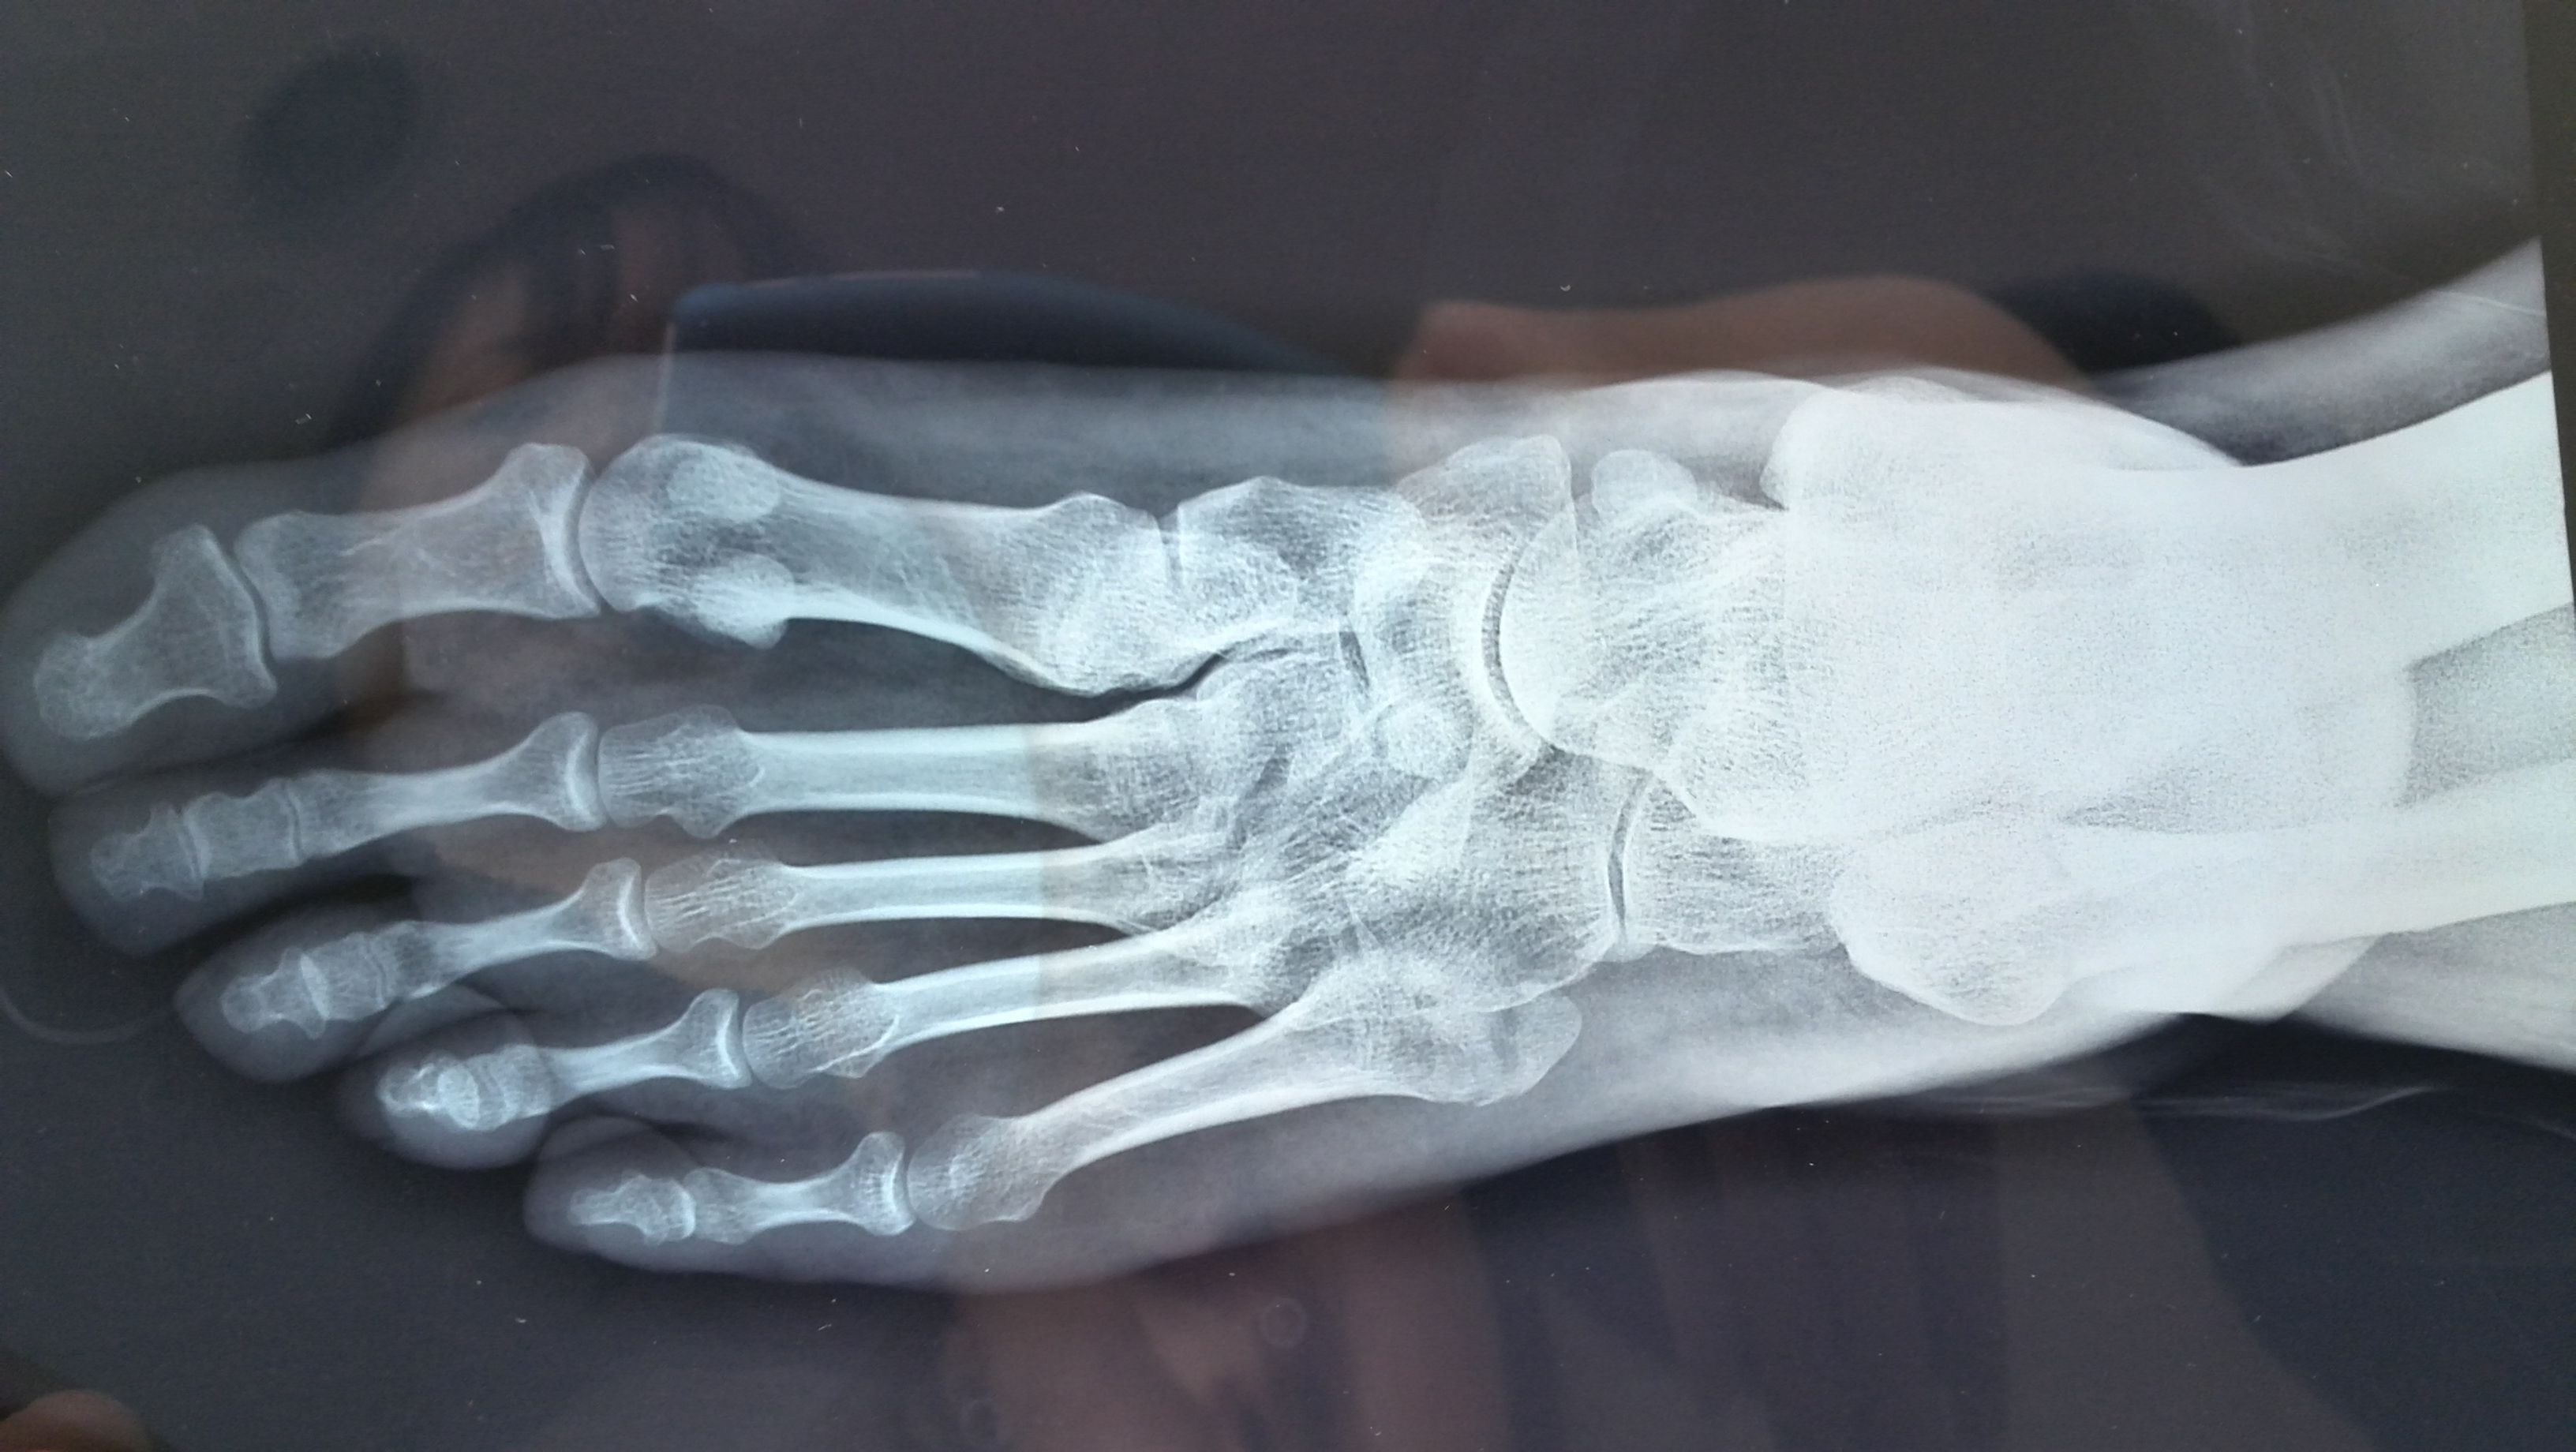 脚骨裂的x光图片图片